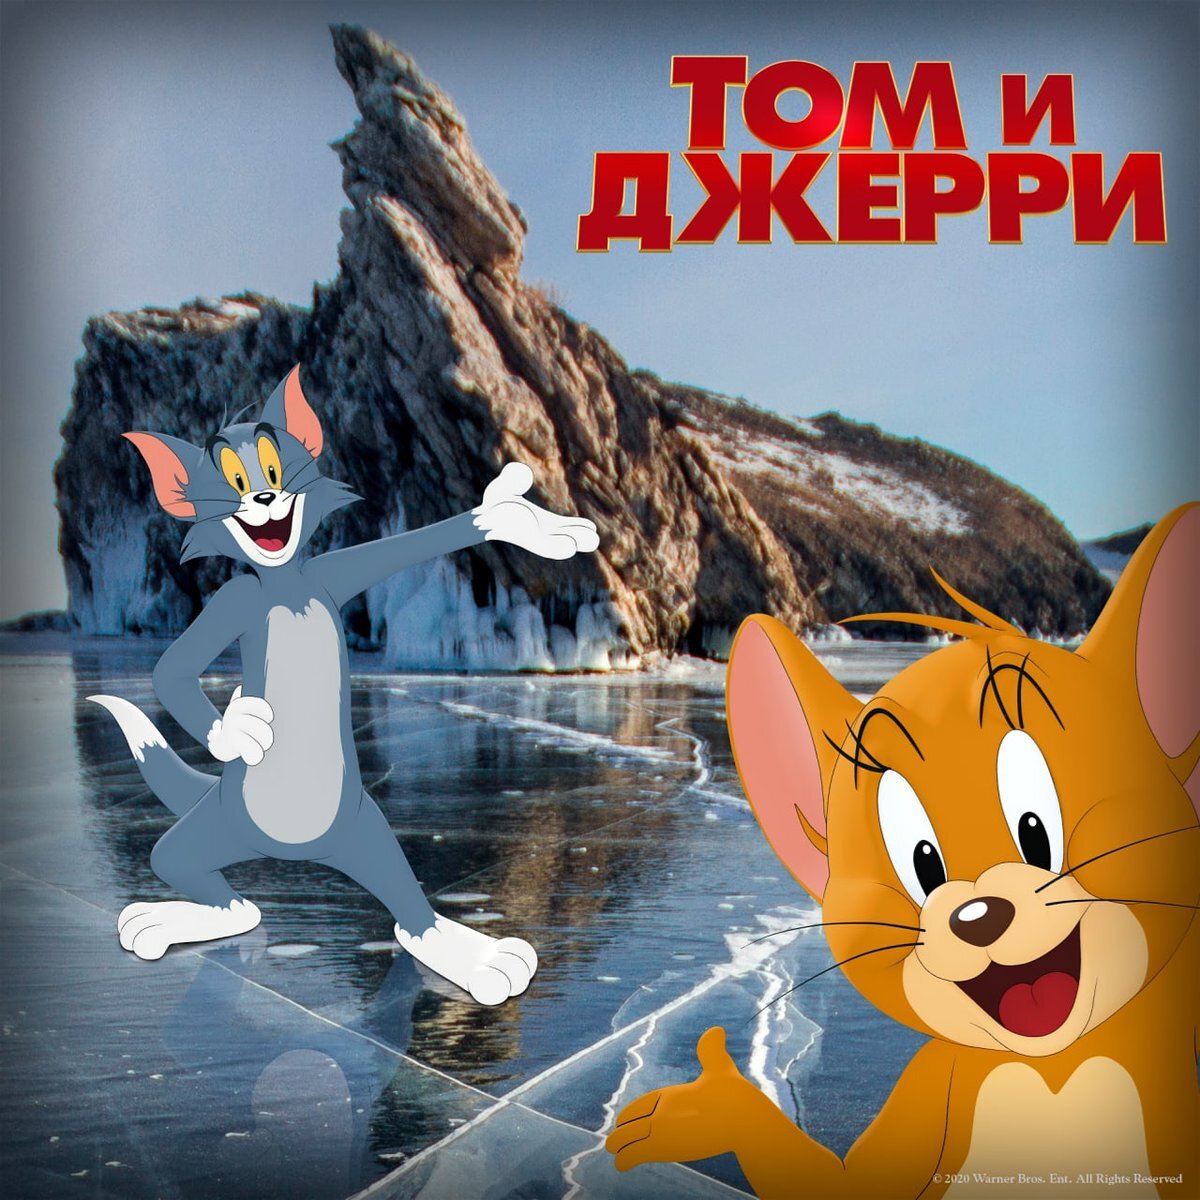 Русский постер к фильму "Том и Джерри" 2021